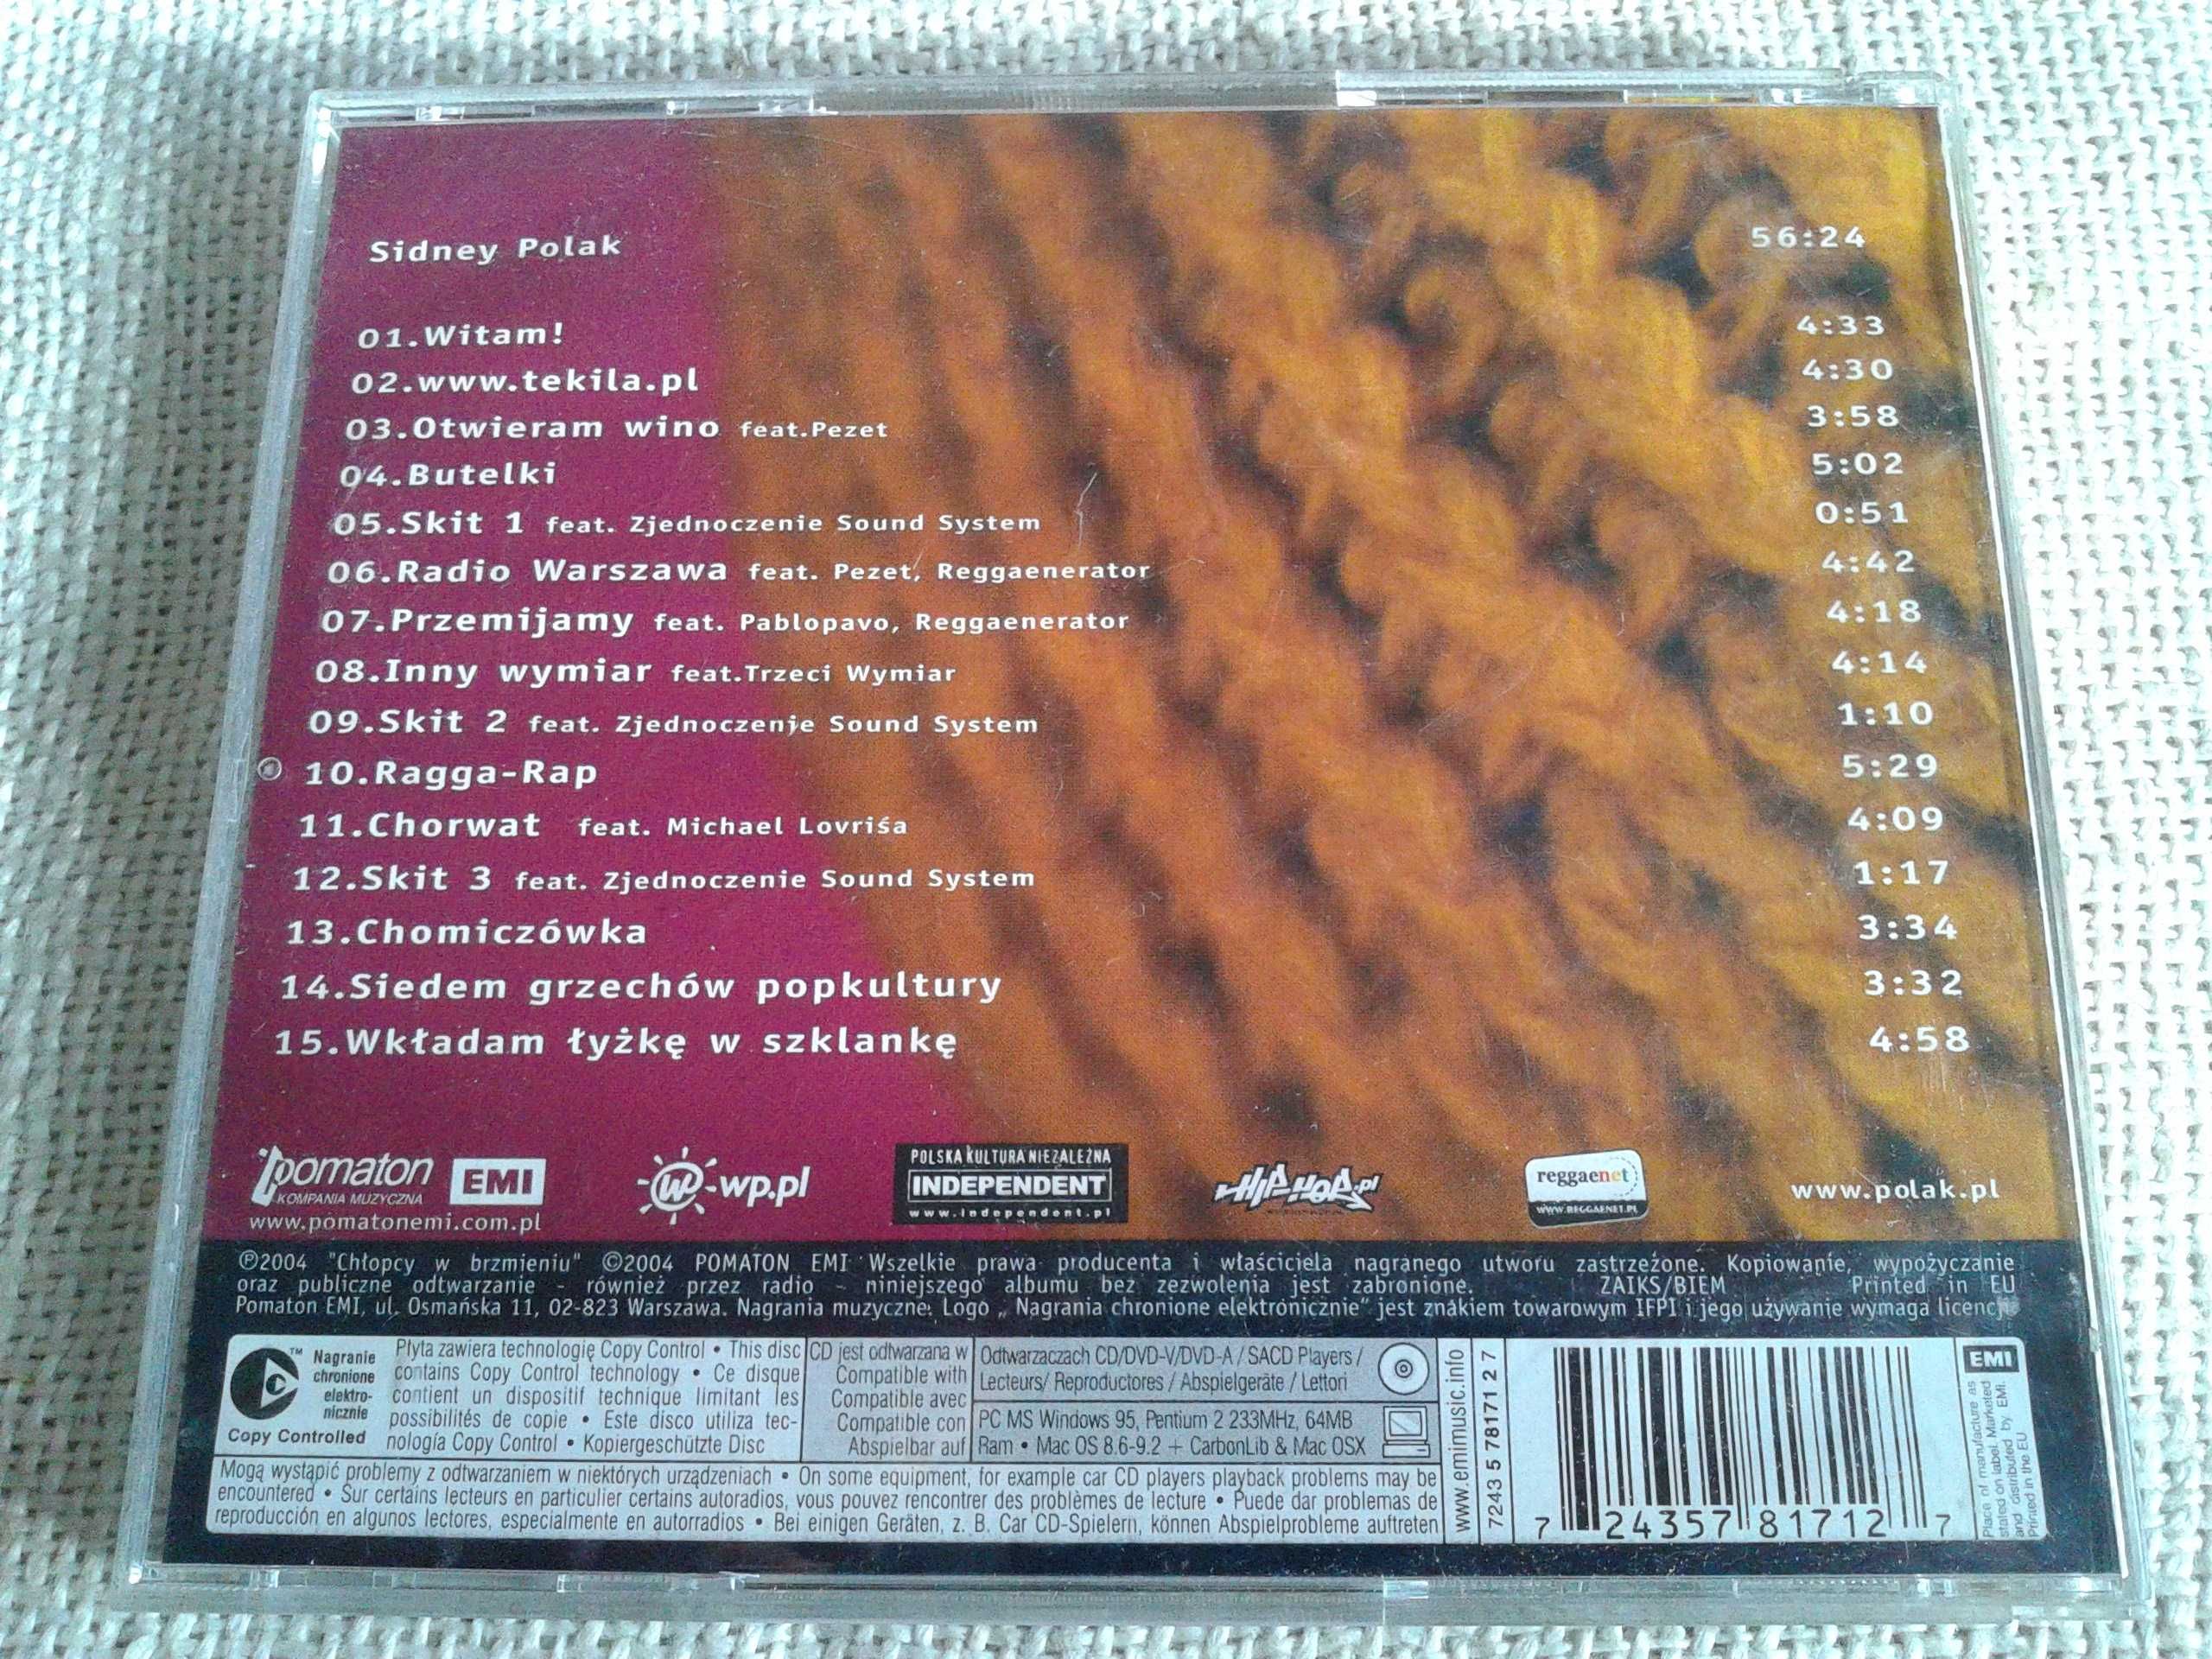 Sidney Polak – Sidney Polak  CD